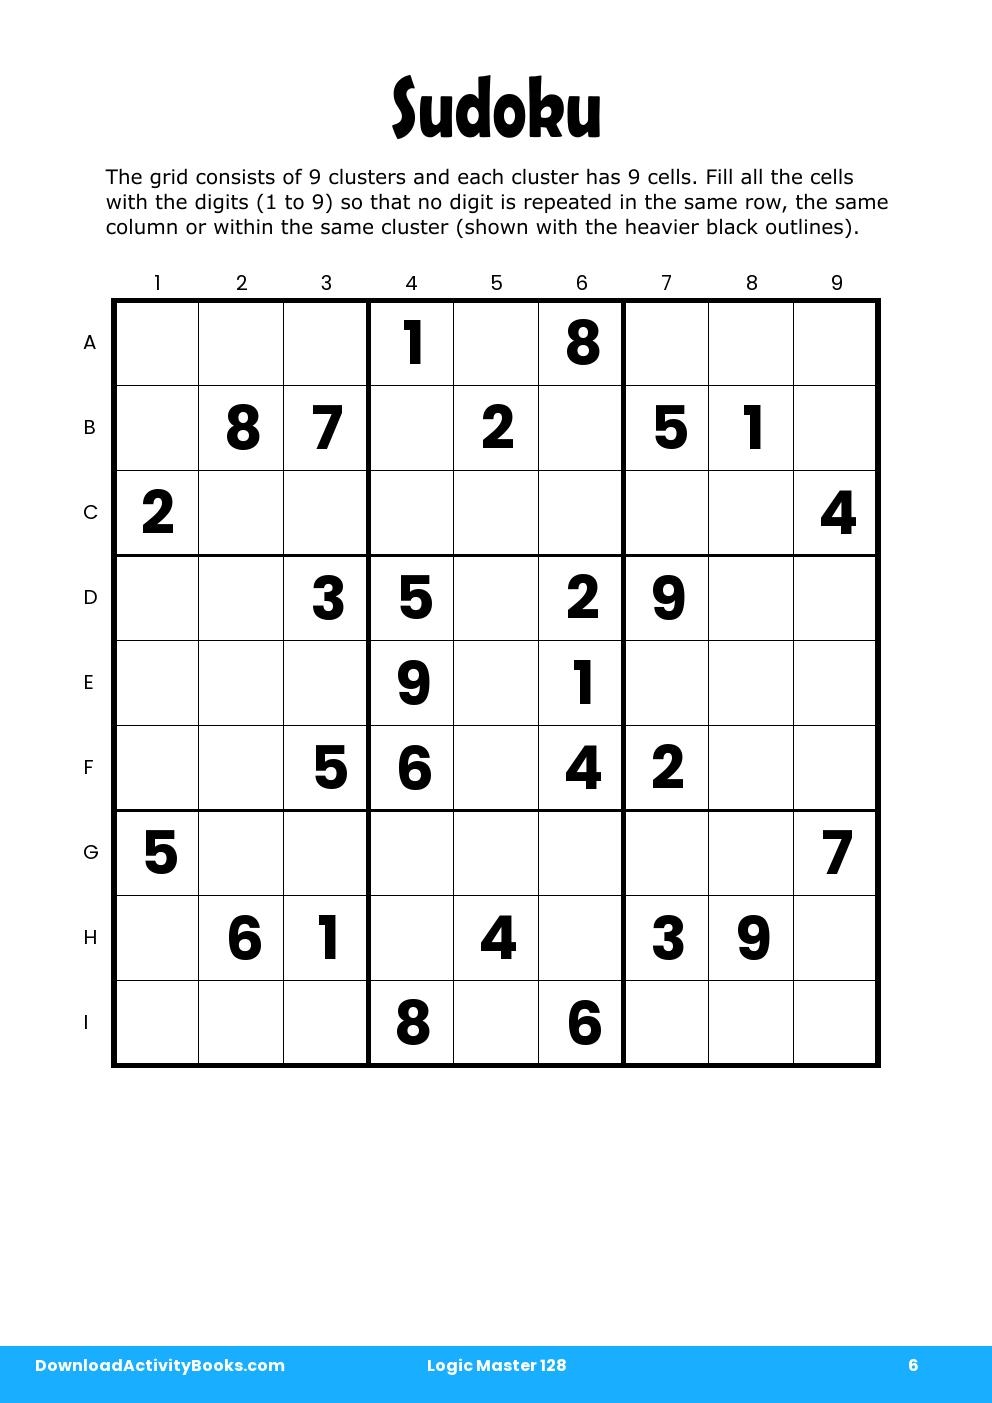 Sudoku in Logic Master 128